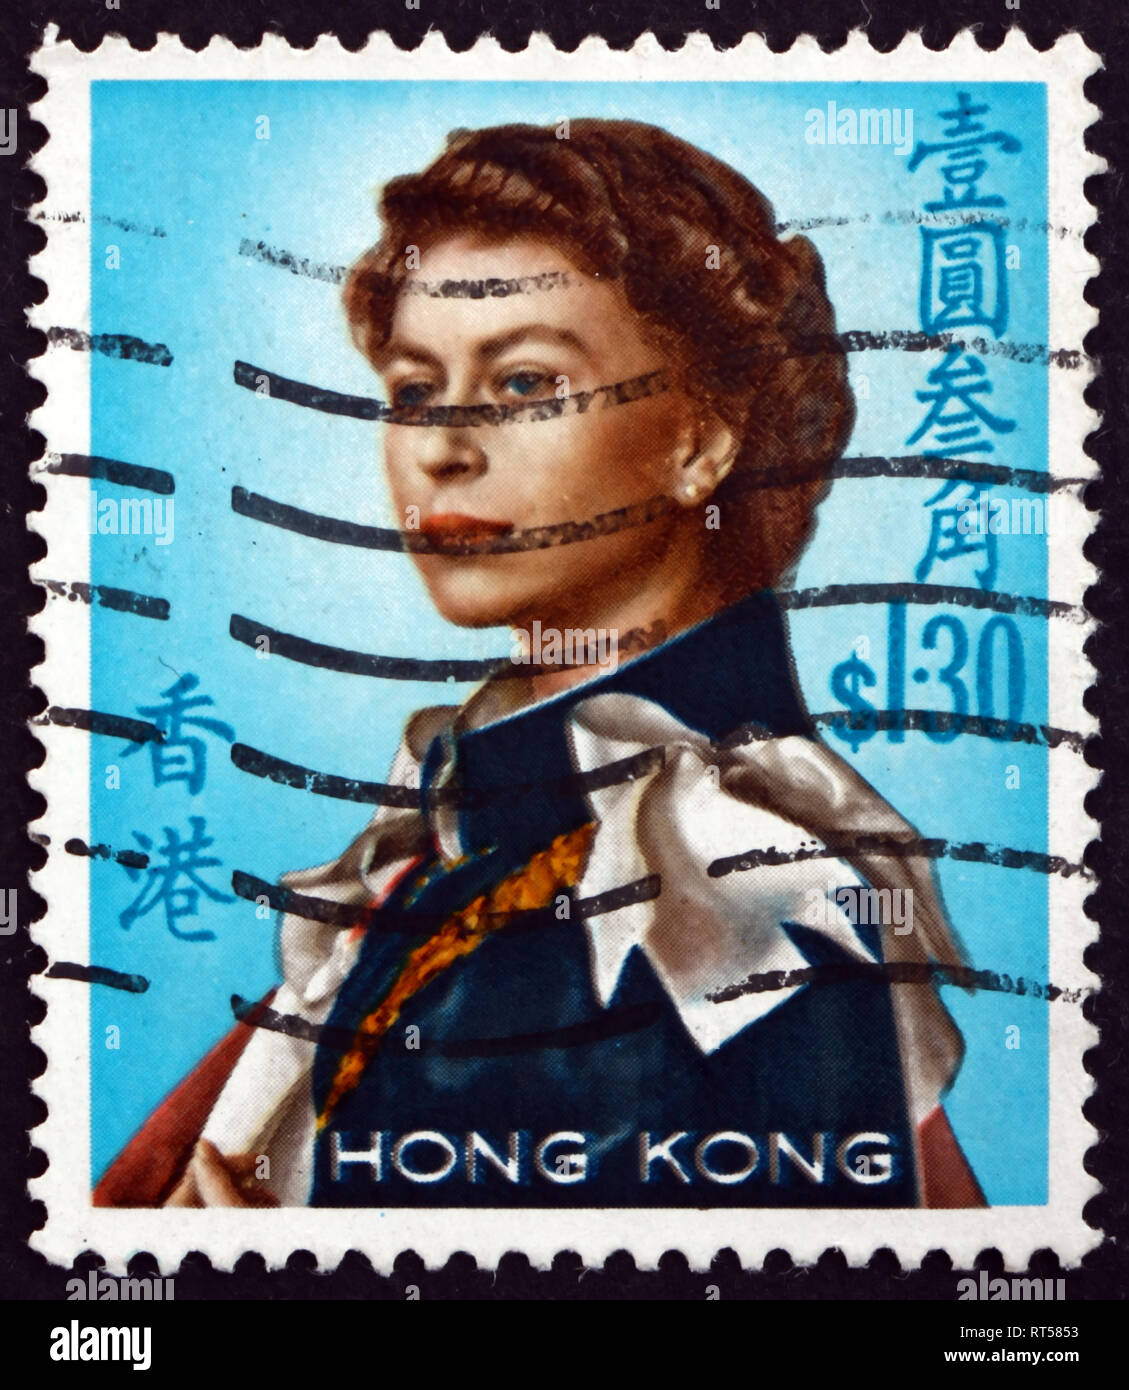 HONG KONG, CHINE - VERS 1972 : timbre imprimé à Hong Kong montre la reine Elizabeth II, portrait, vers 1972 Banque D'Images